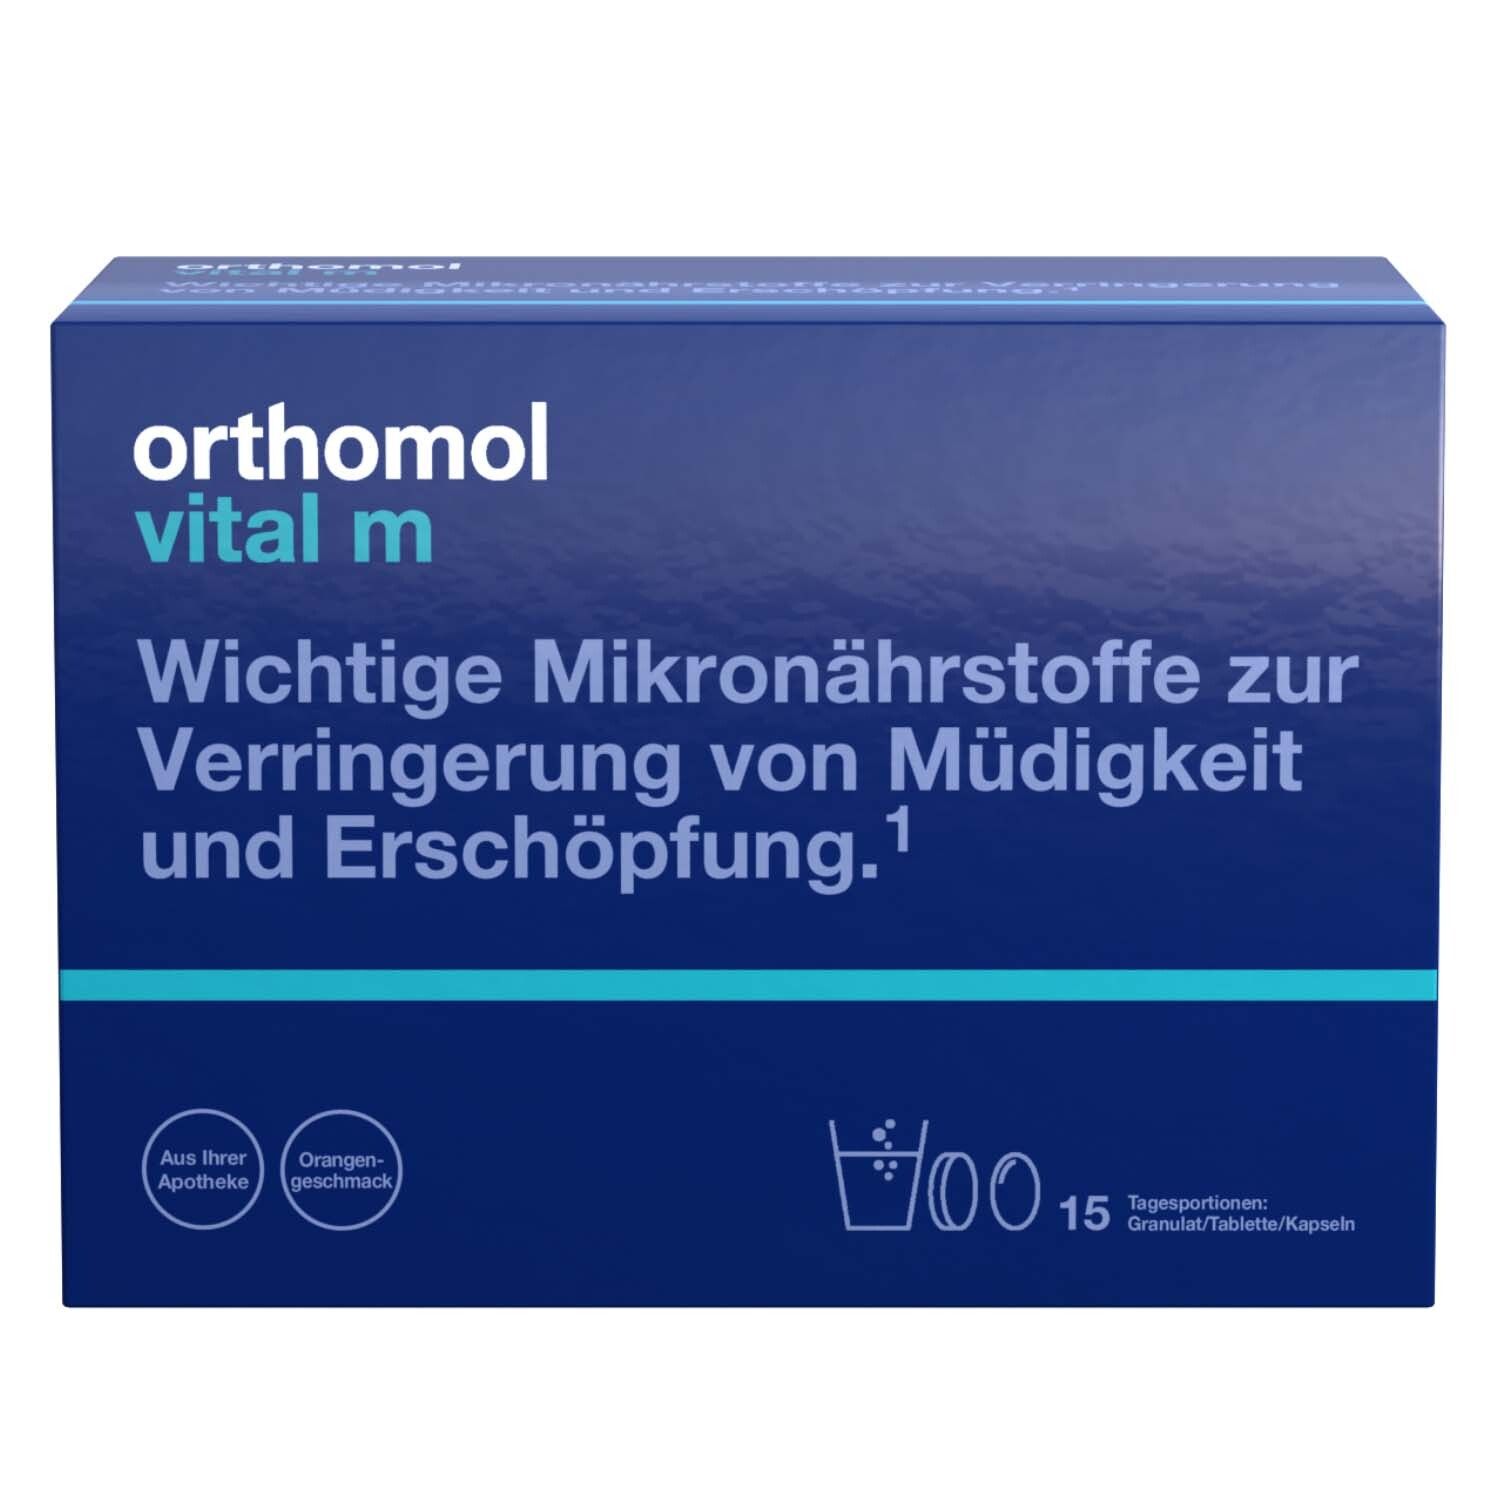 Orthomol Vital m für Männer - bei Müdigkeit - mit B-Vitaminen und Omega-3 - Granulat/Tabletten/Kapseln - Orangen-Geschma